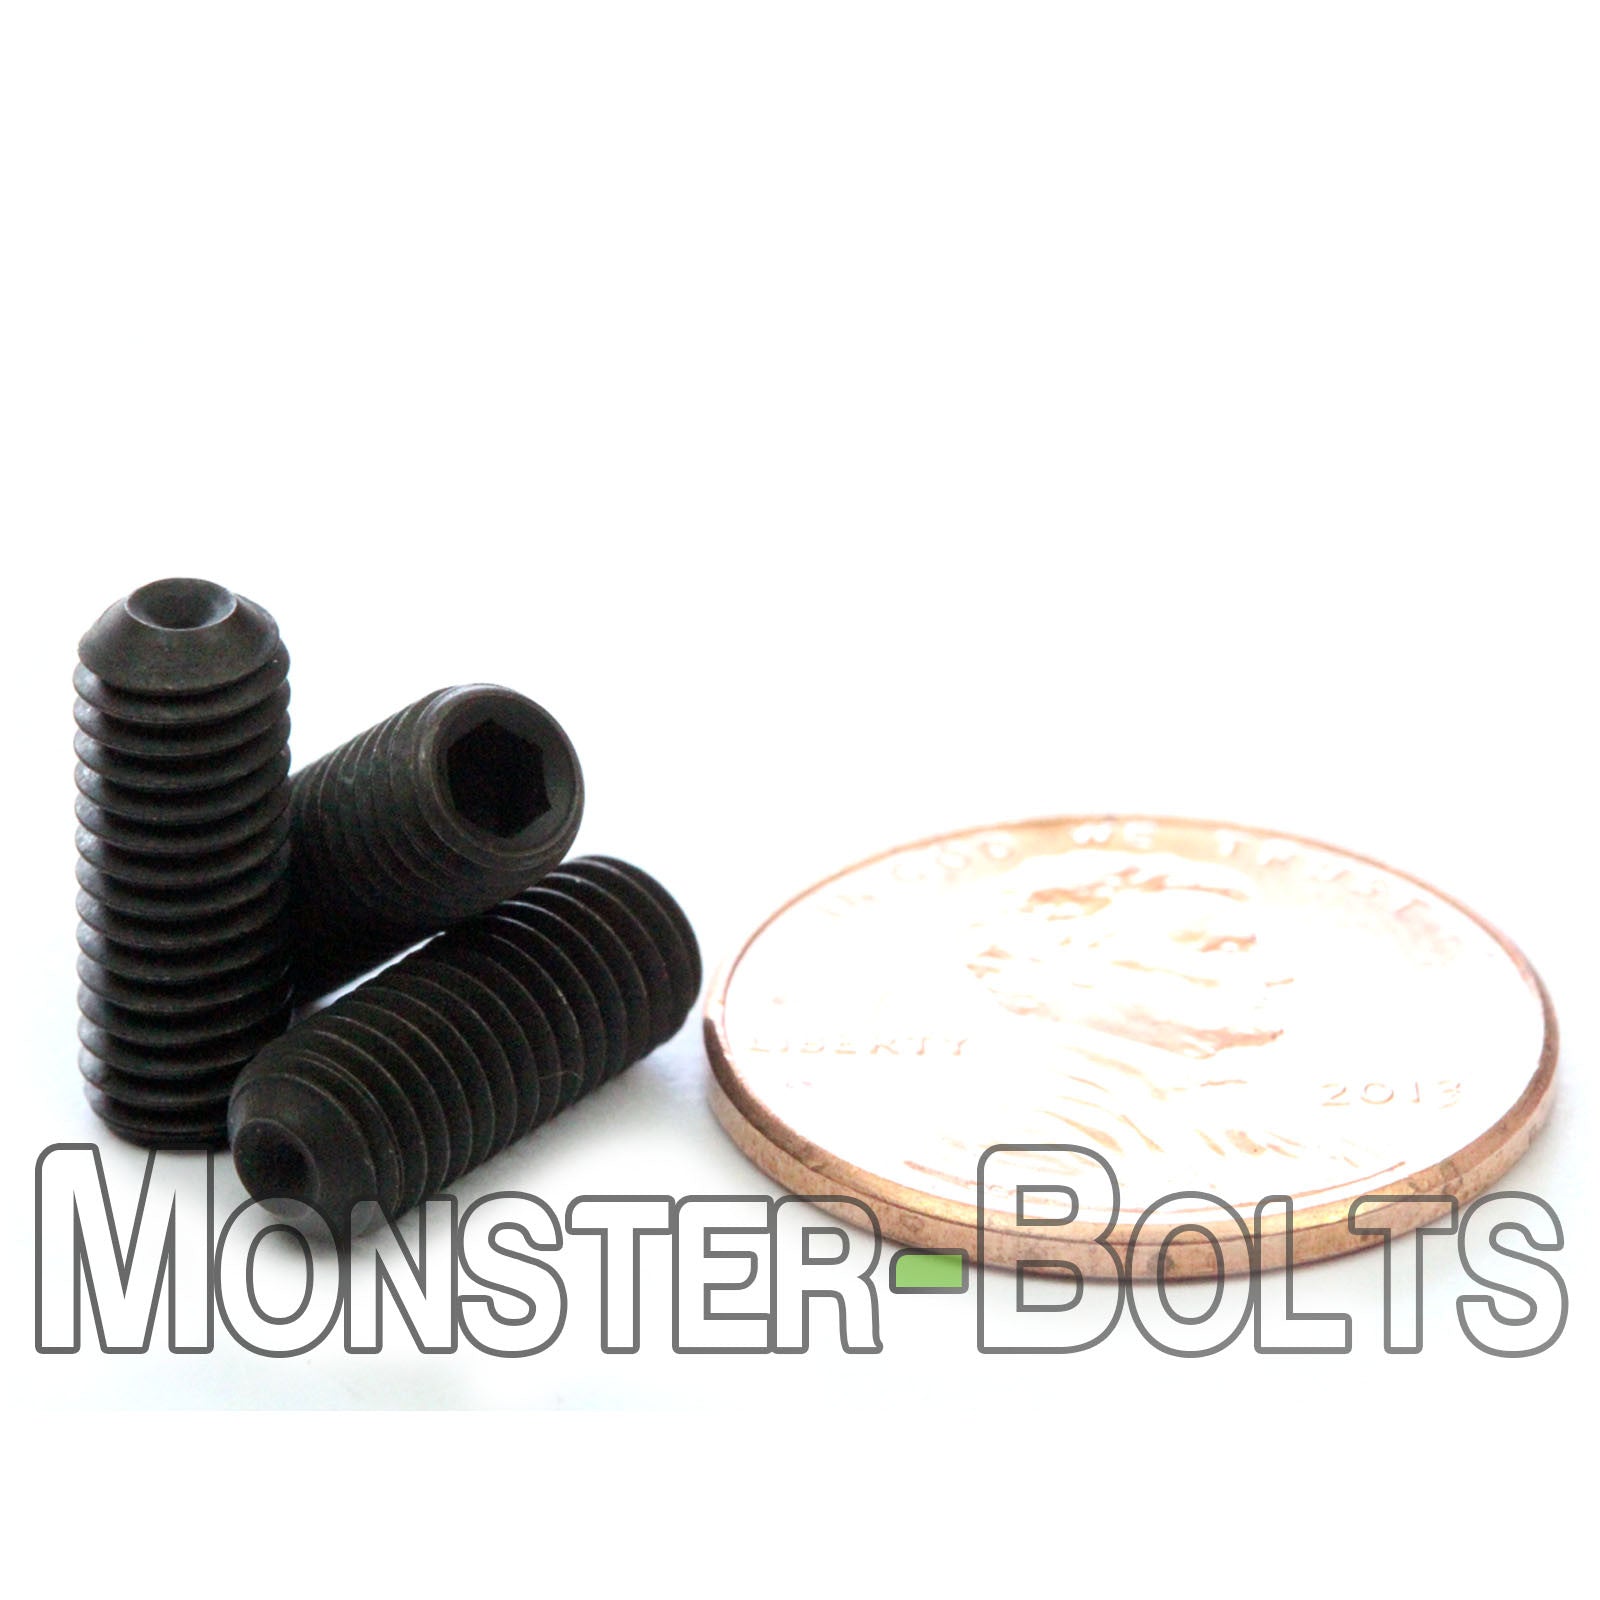 10 32 Fine Cup Point Socket Set Screws Alloy Steel W Black Oxide 